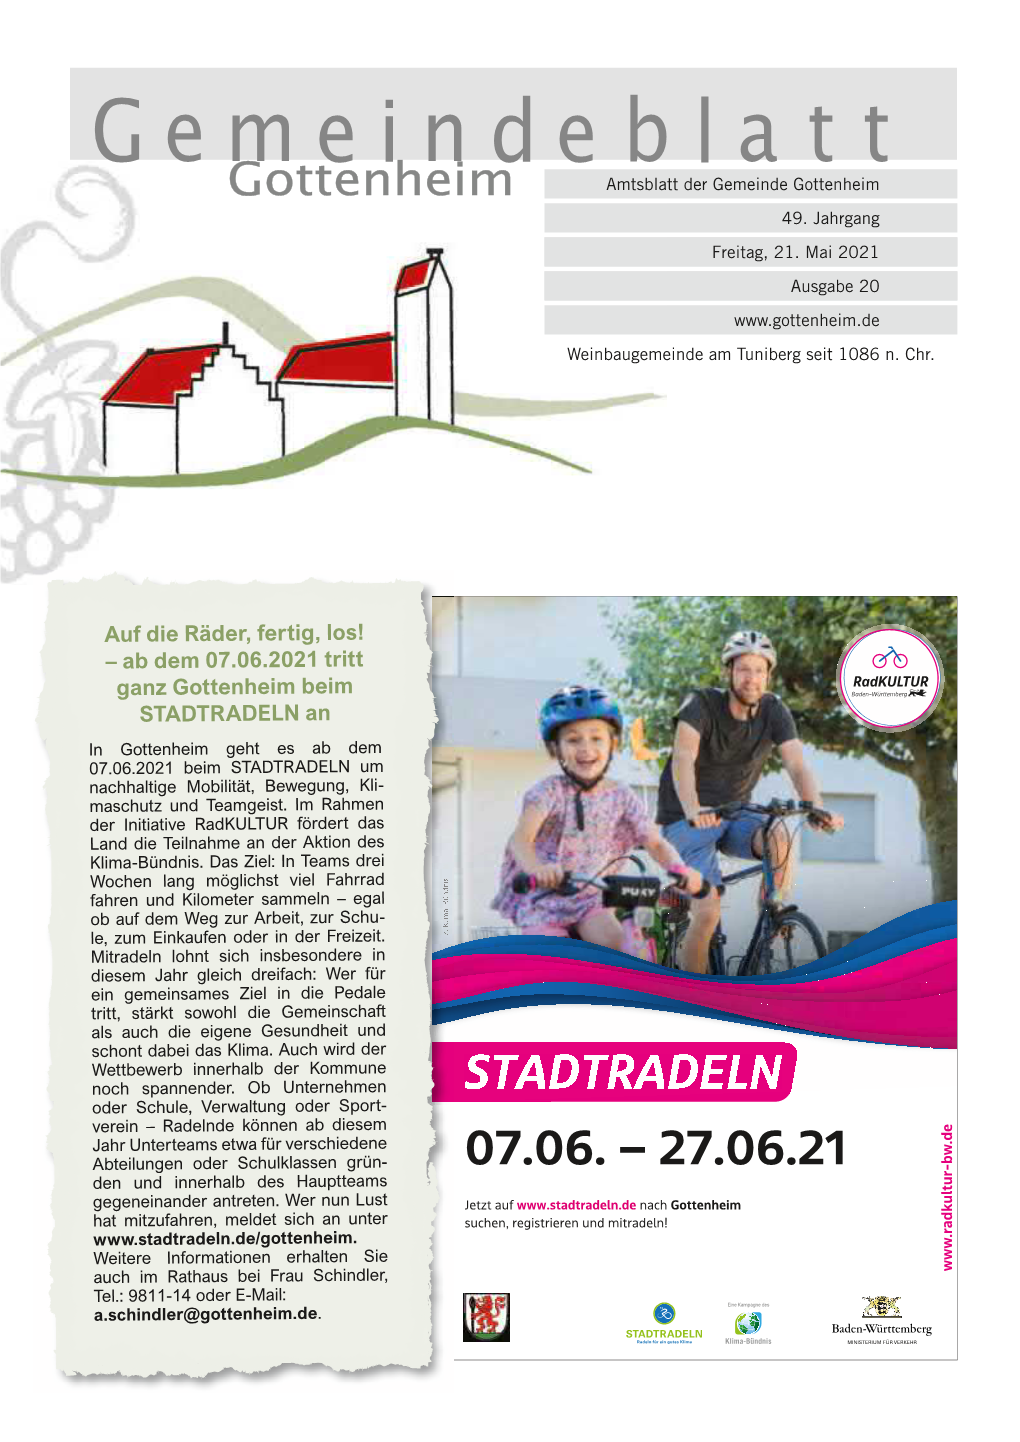 STADTRADELN an in Gottenheim Geht Es Ab Dem 07.06.2021 Beim STADTRADELN Um Nachhaltige Mobilität, Bewegung, Kli- Maschutz Und Teamgeist